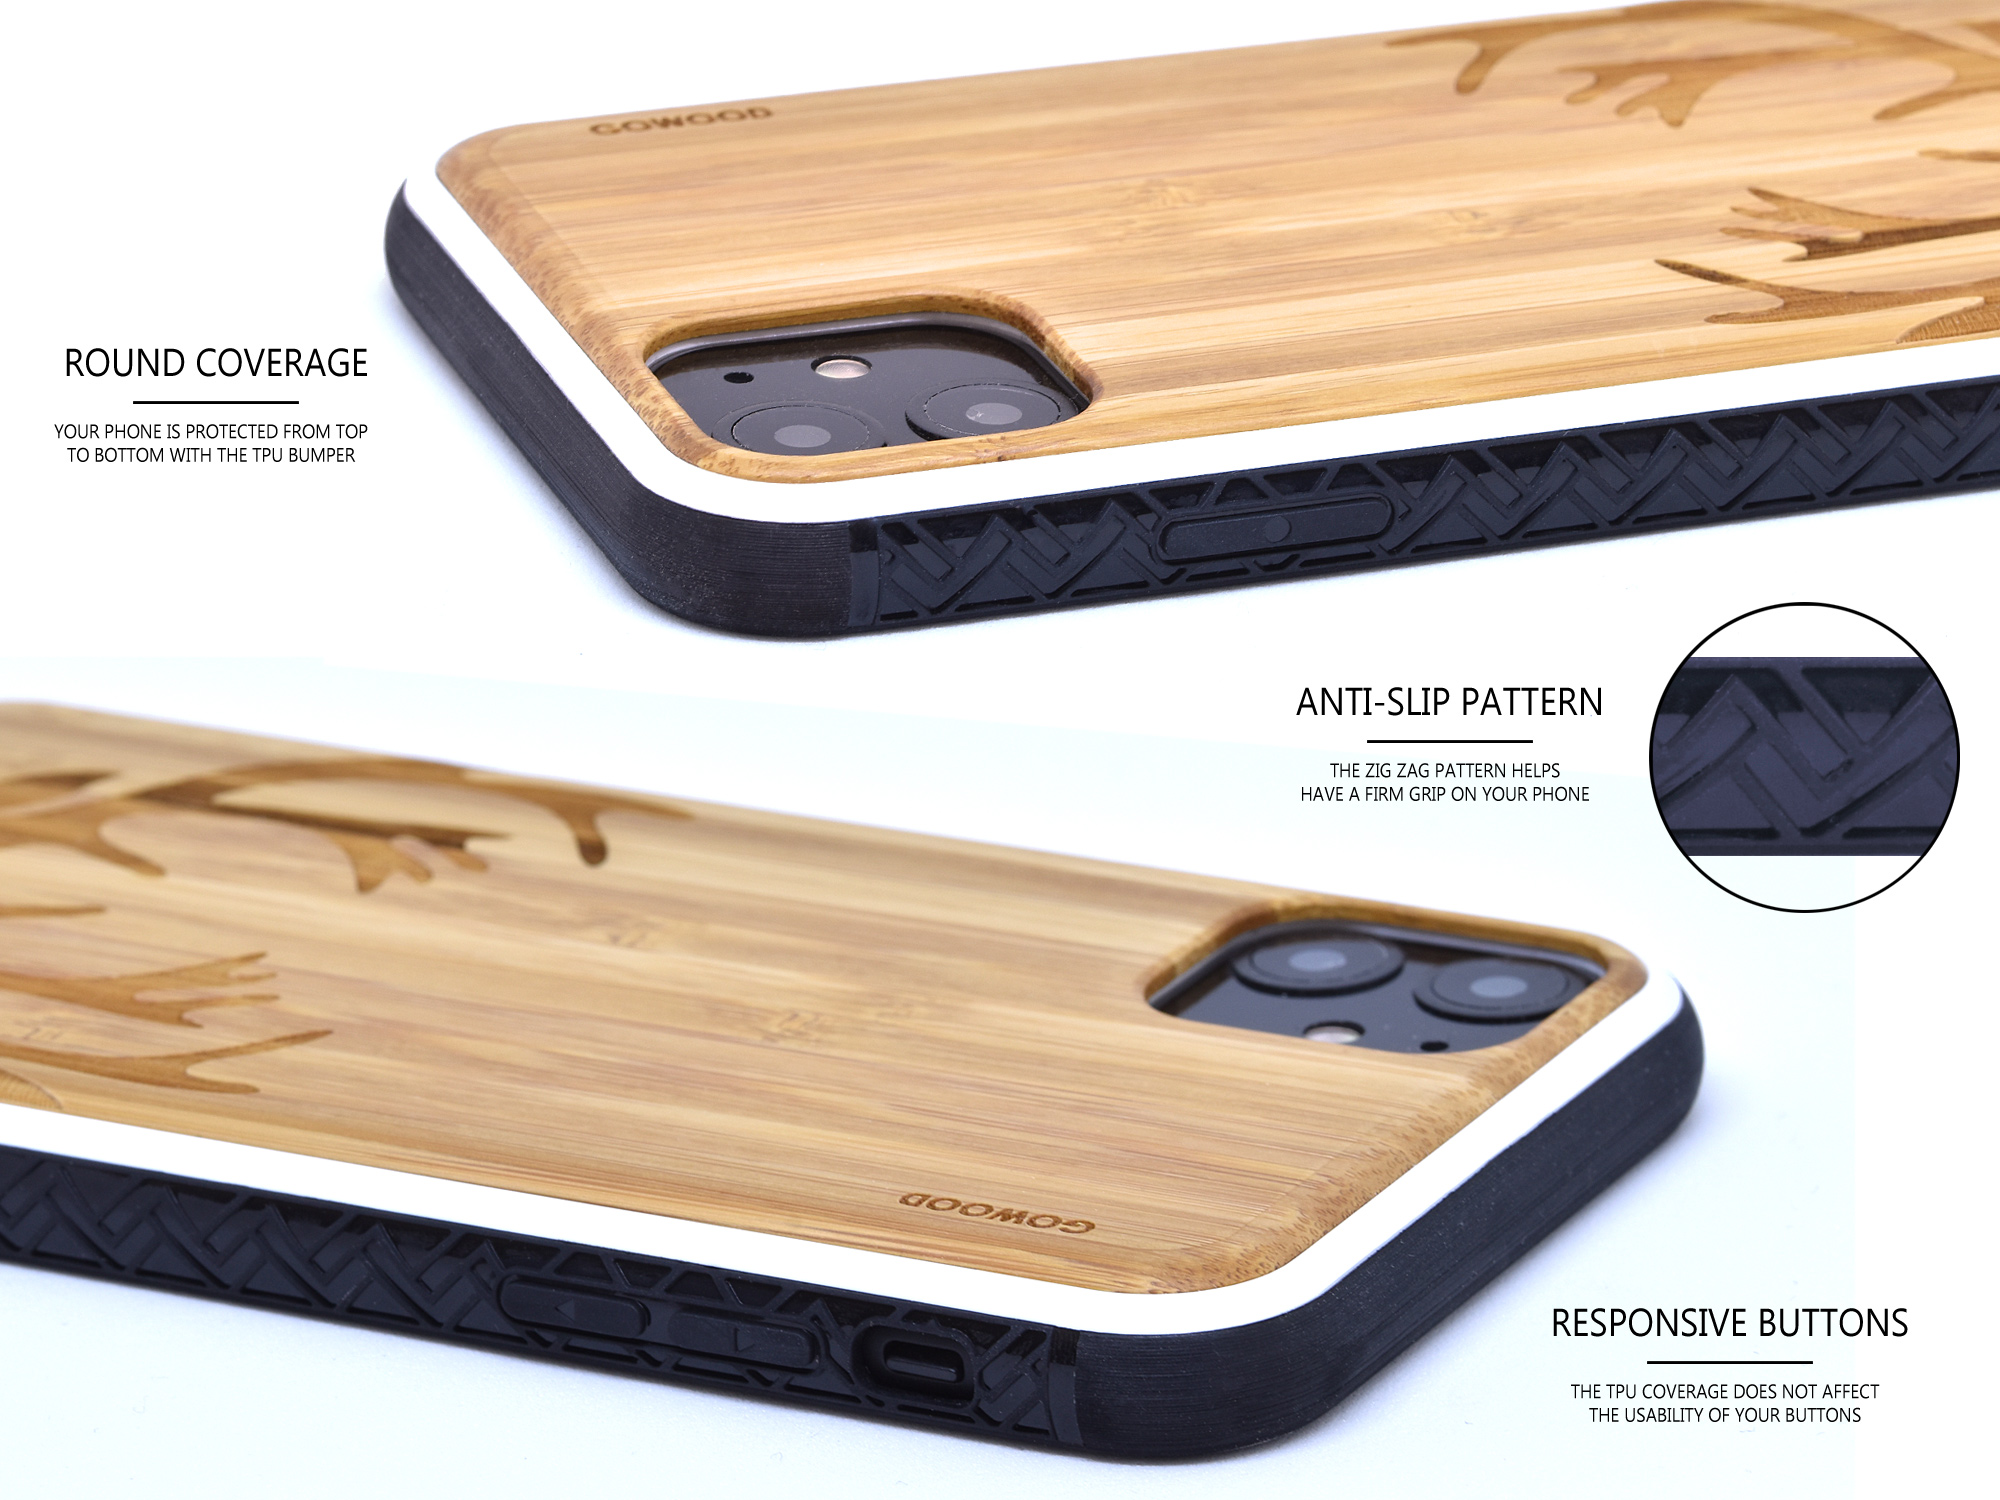 Coque iPhone 12 Mini en bois - Résistante aux chocs - Originale